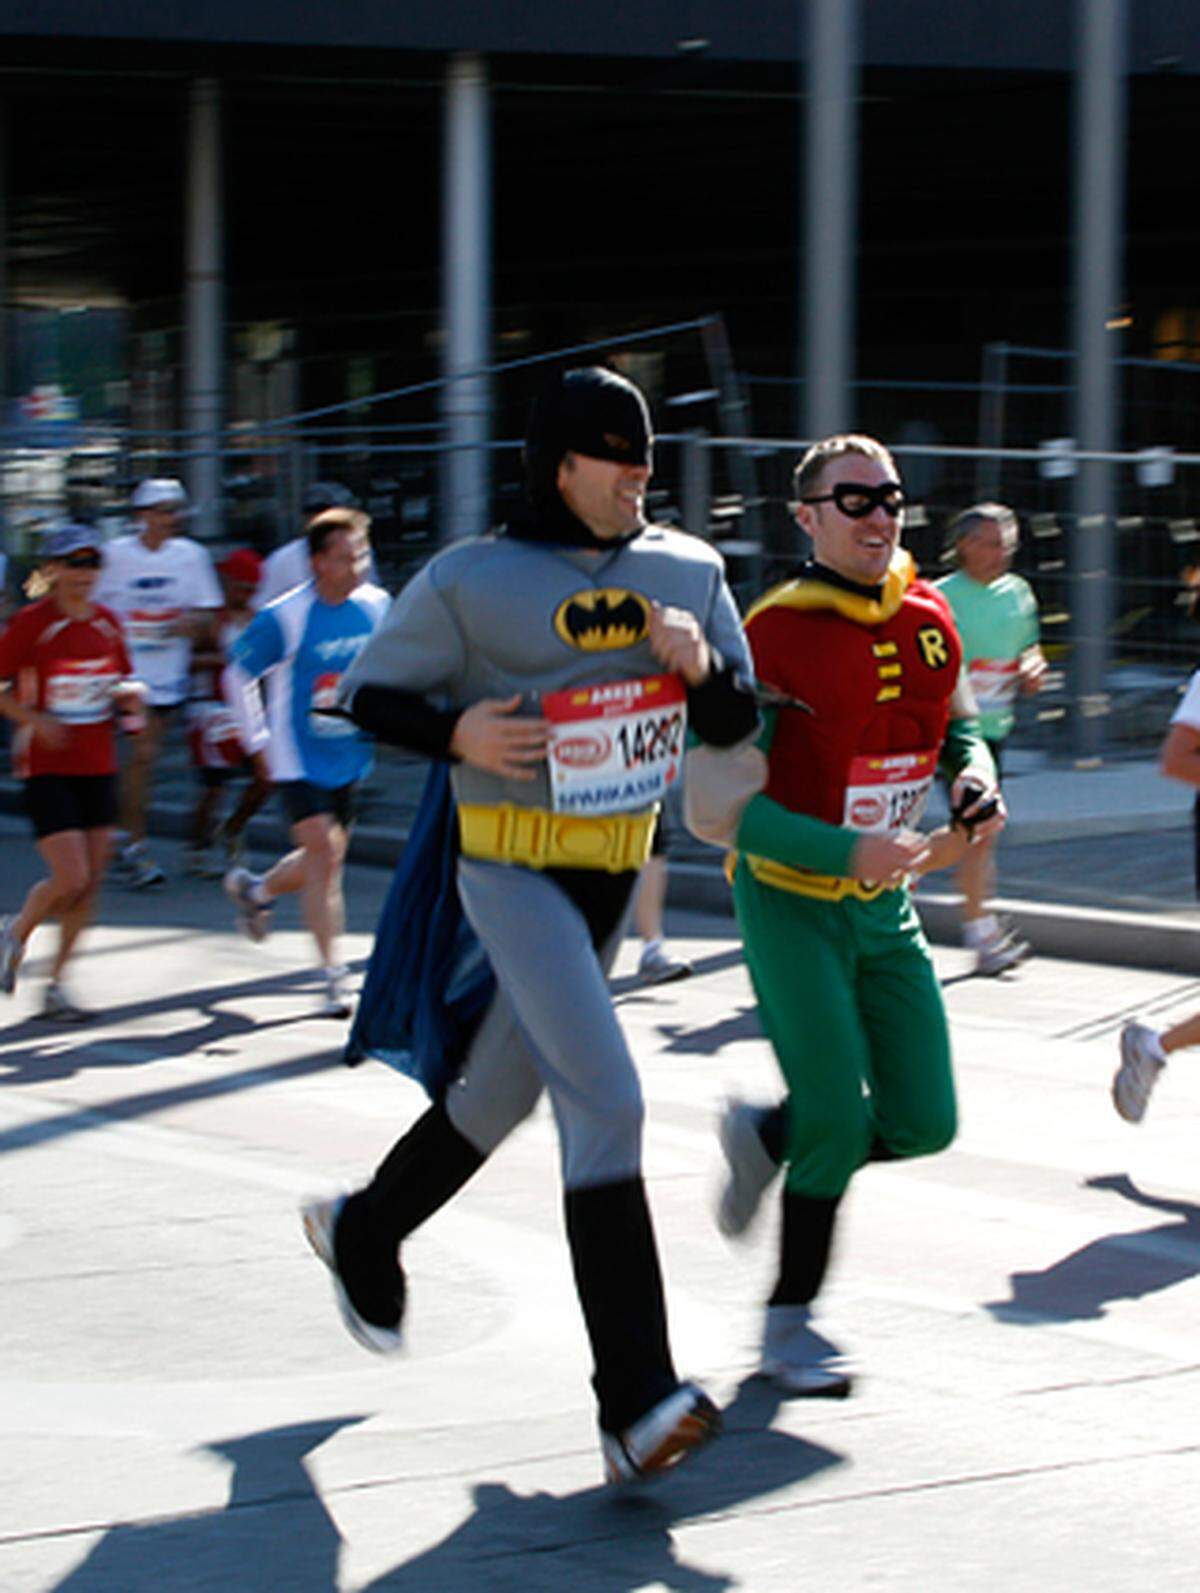 Nicht alle waren im Outfit eines Hochleistungssportlers gekommen. Dennoch waren Batman, Robin &amp; Co. mit Ernst bei der Sache. Genau wie ...